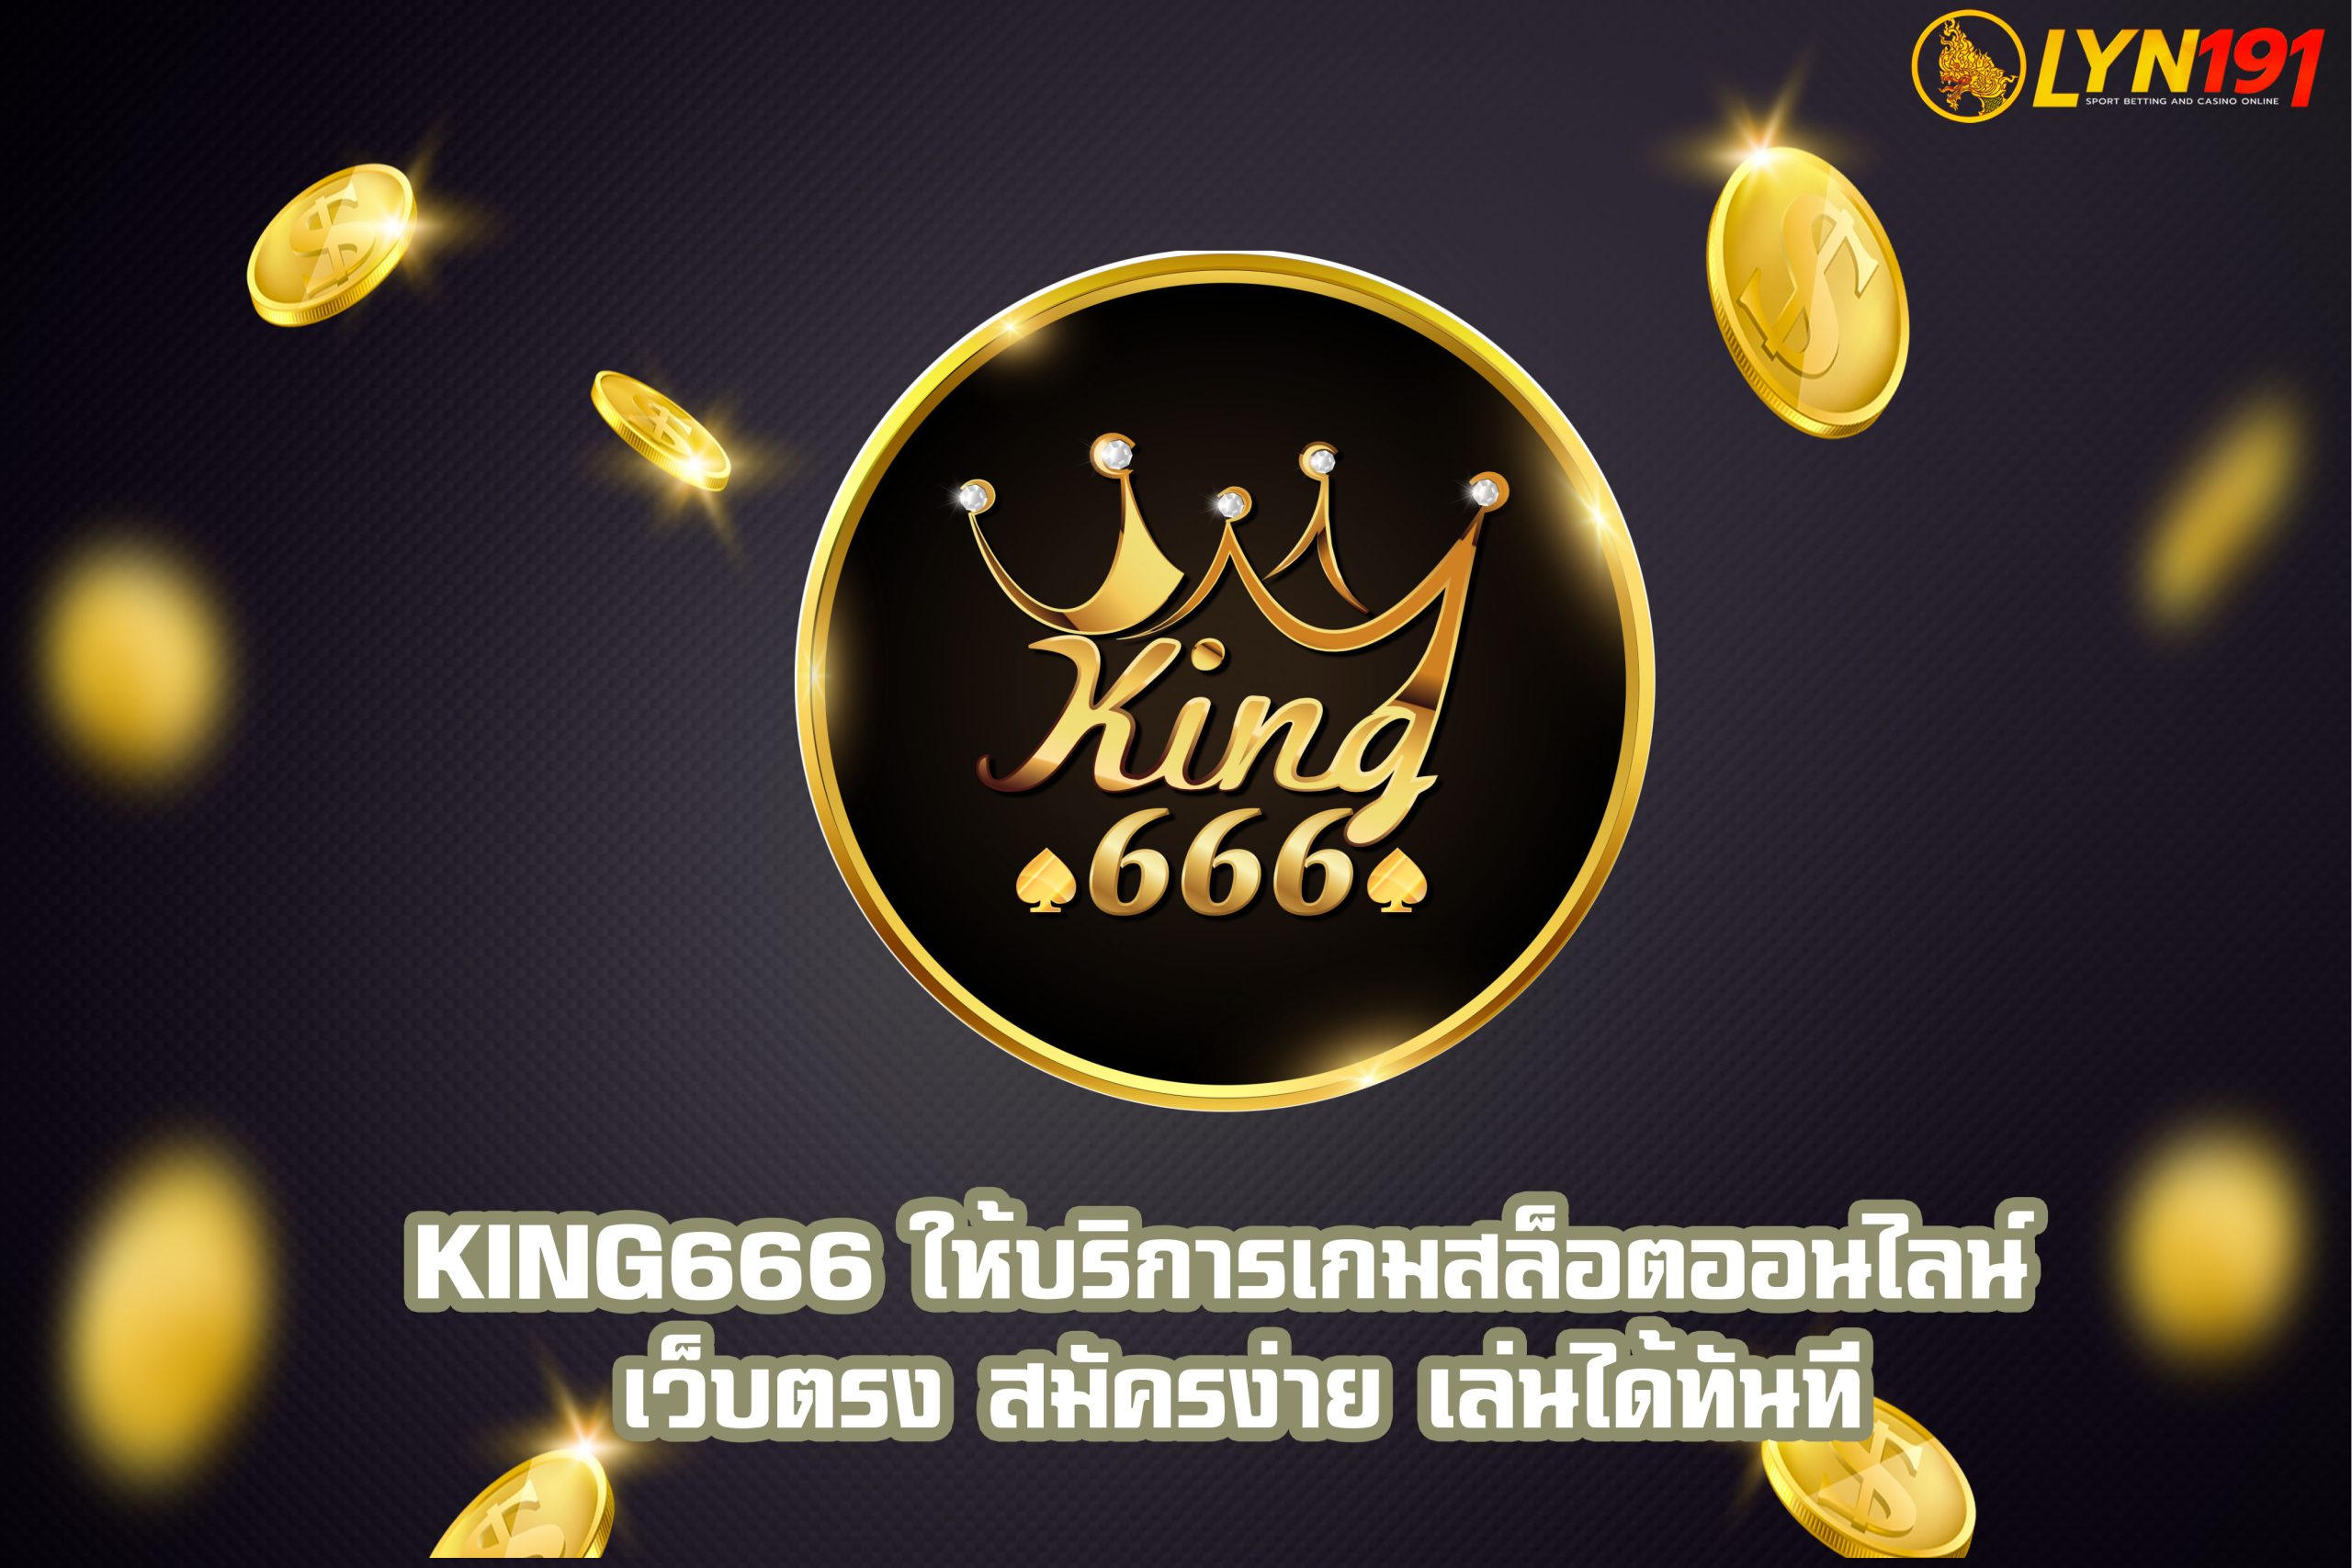 KING666